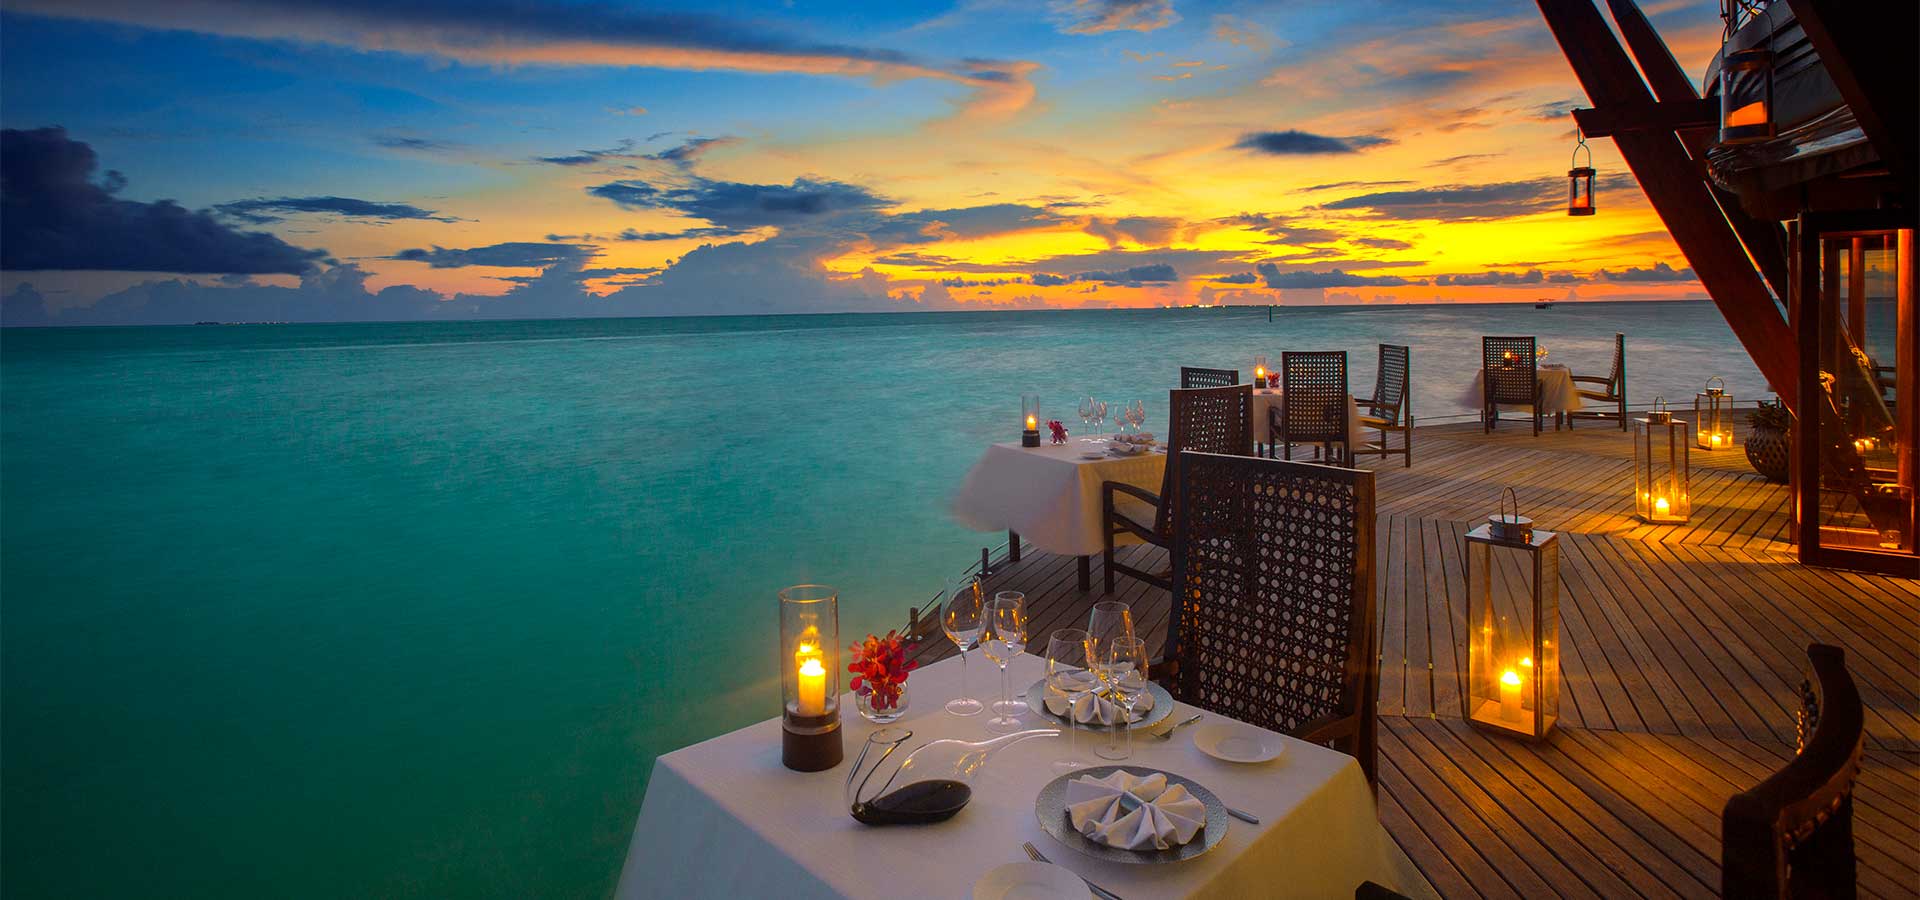 Baros-Maldives-Restaurant-dining-9-1